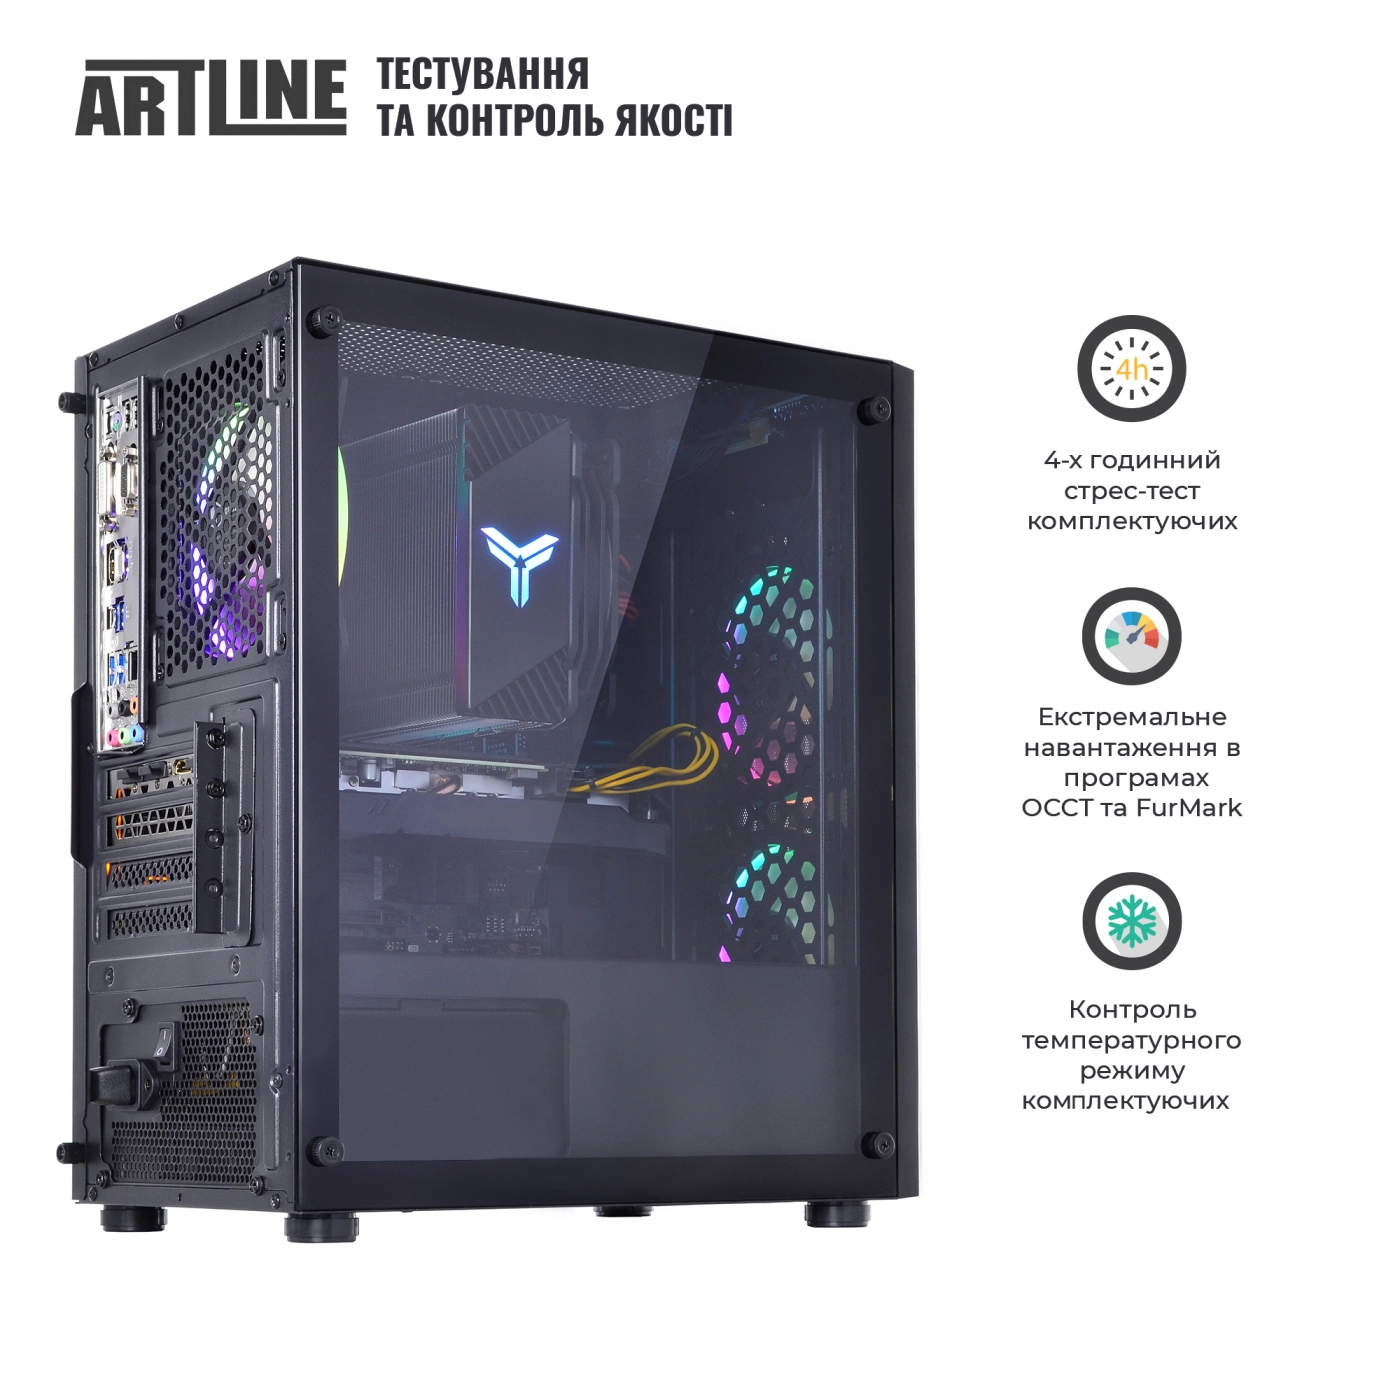 Купить Компьютер ARTLINE Gaming X71v24 - фото 8